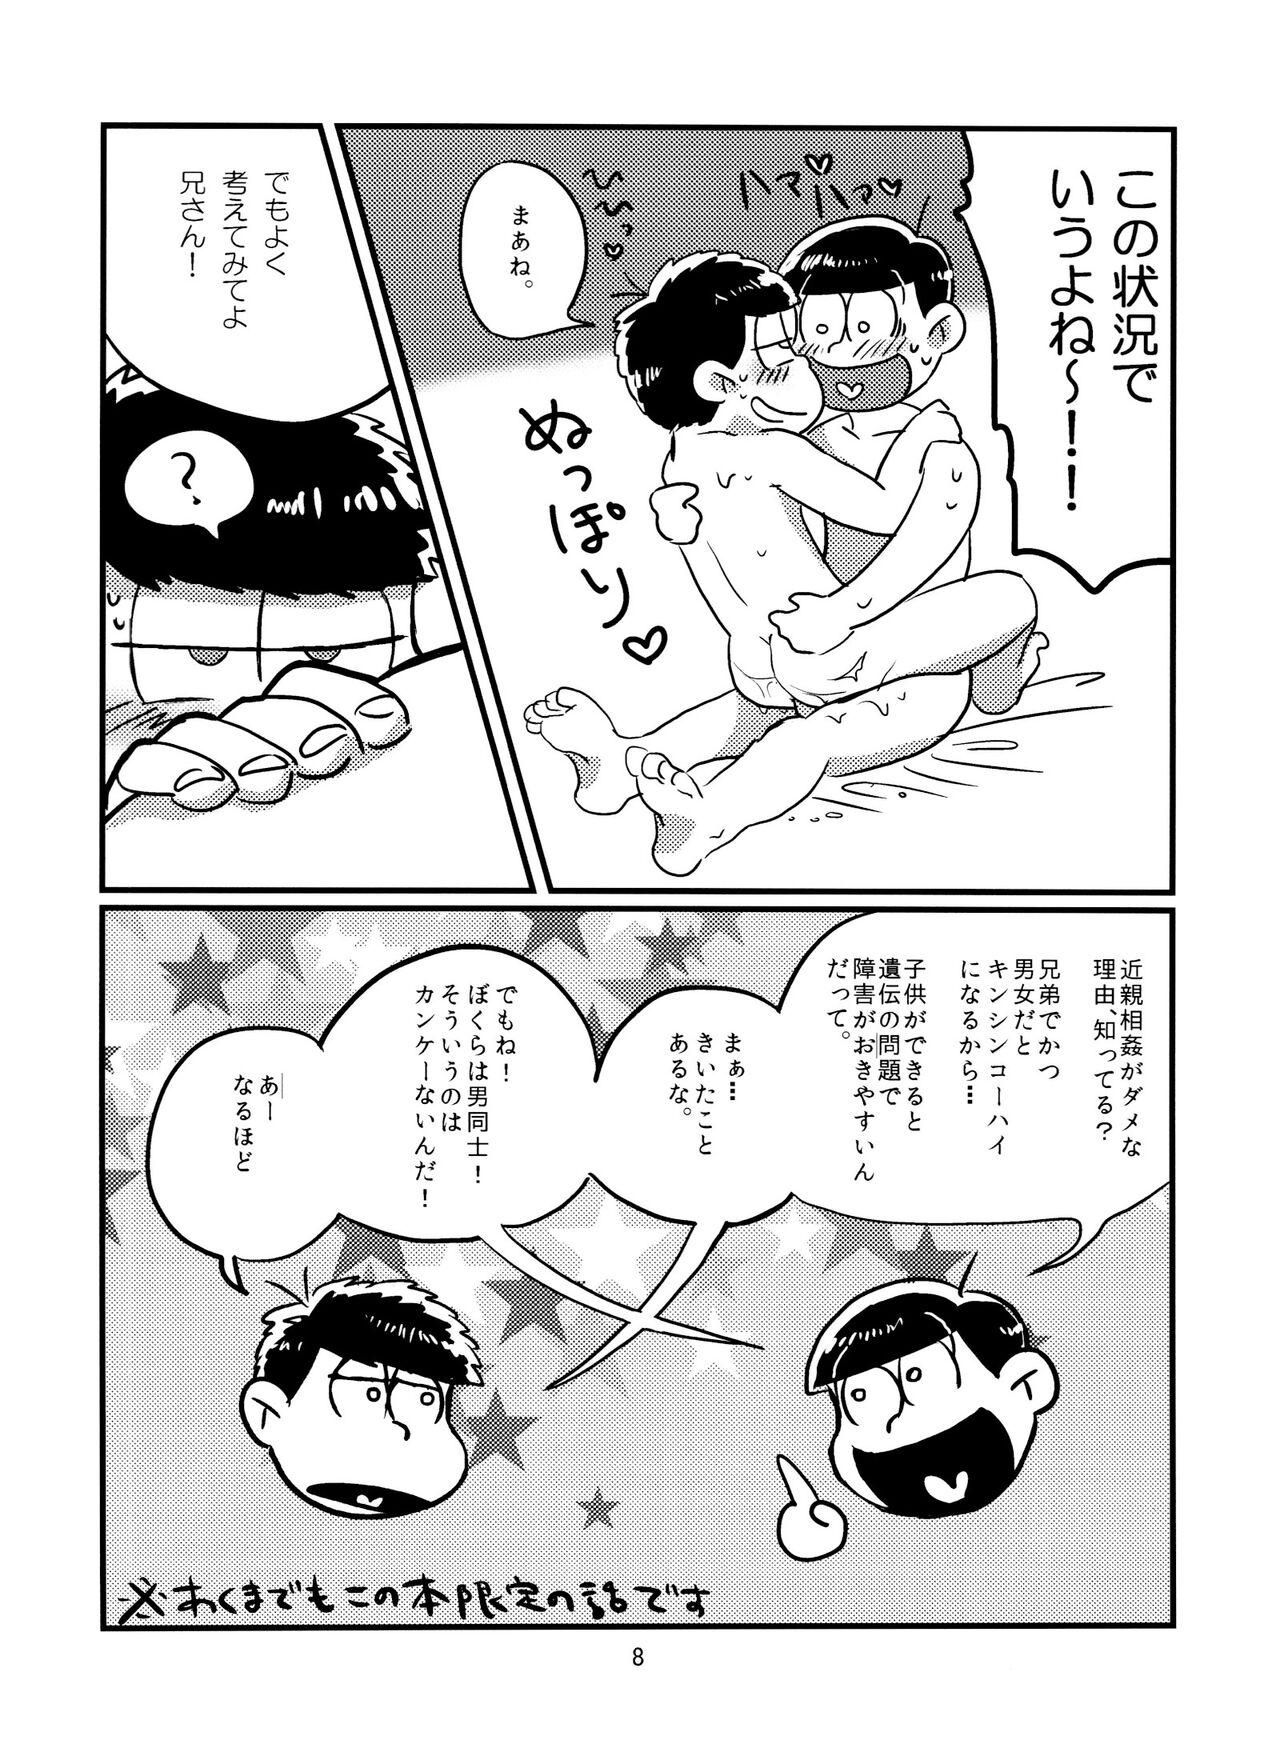 Rubbing Beautiful Sex Life - Osomatsu san Sex Massage - Page 9